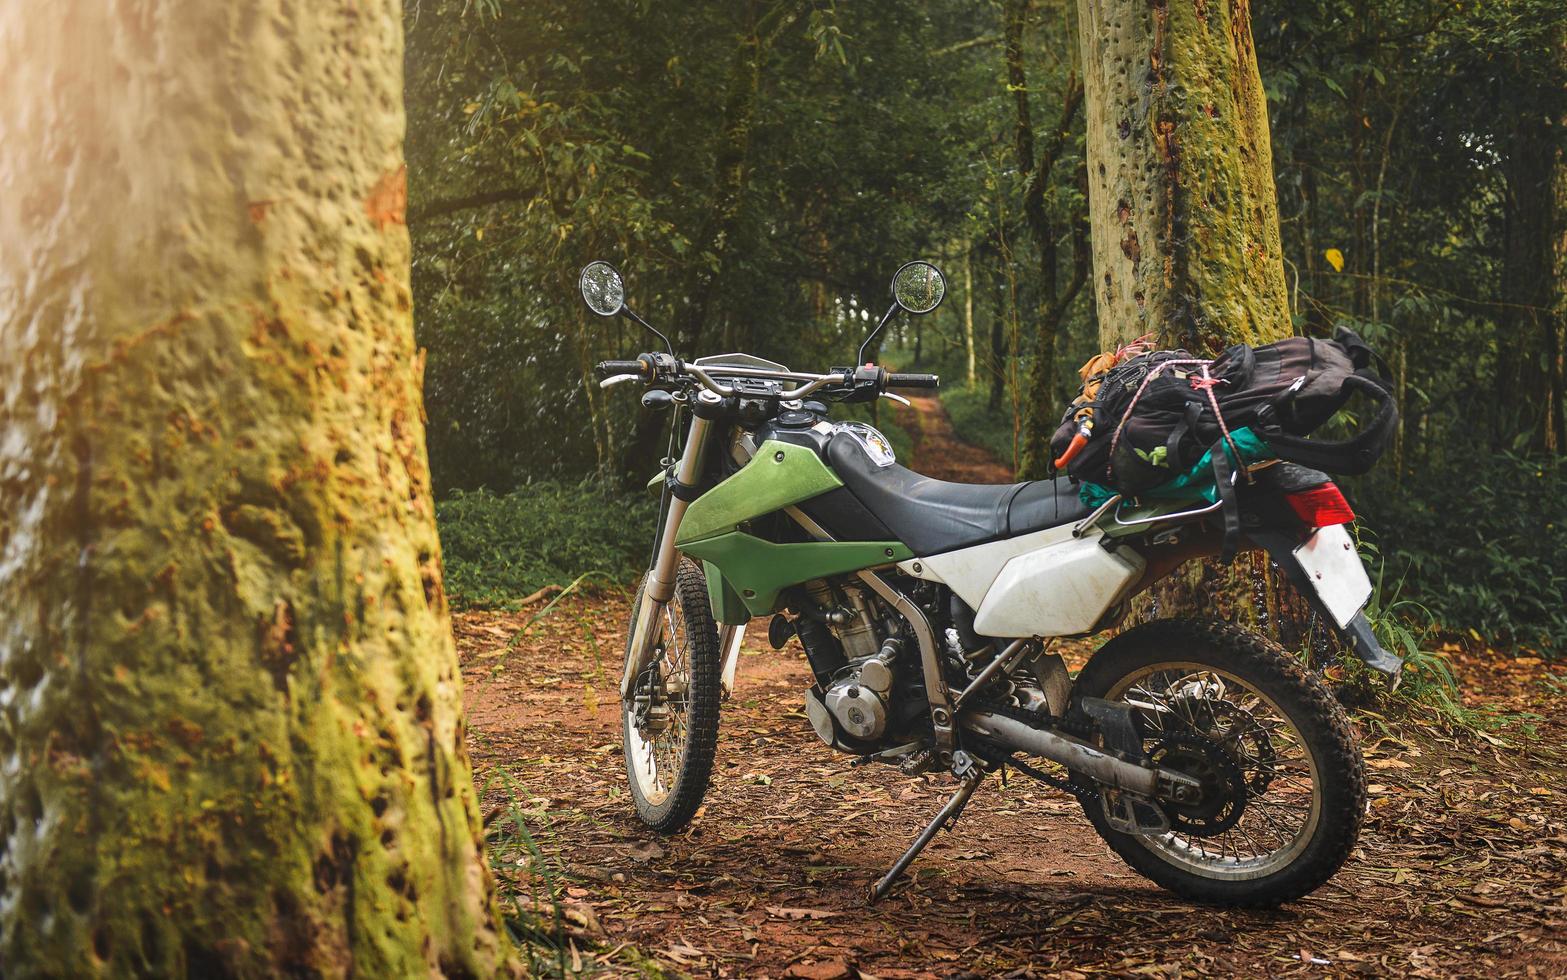 äventyrsresande enduromotorcykel i bergskog. foto